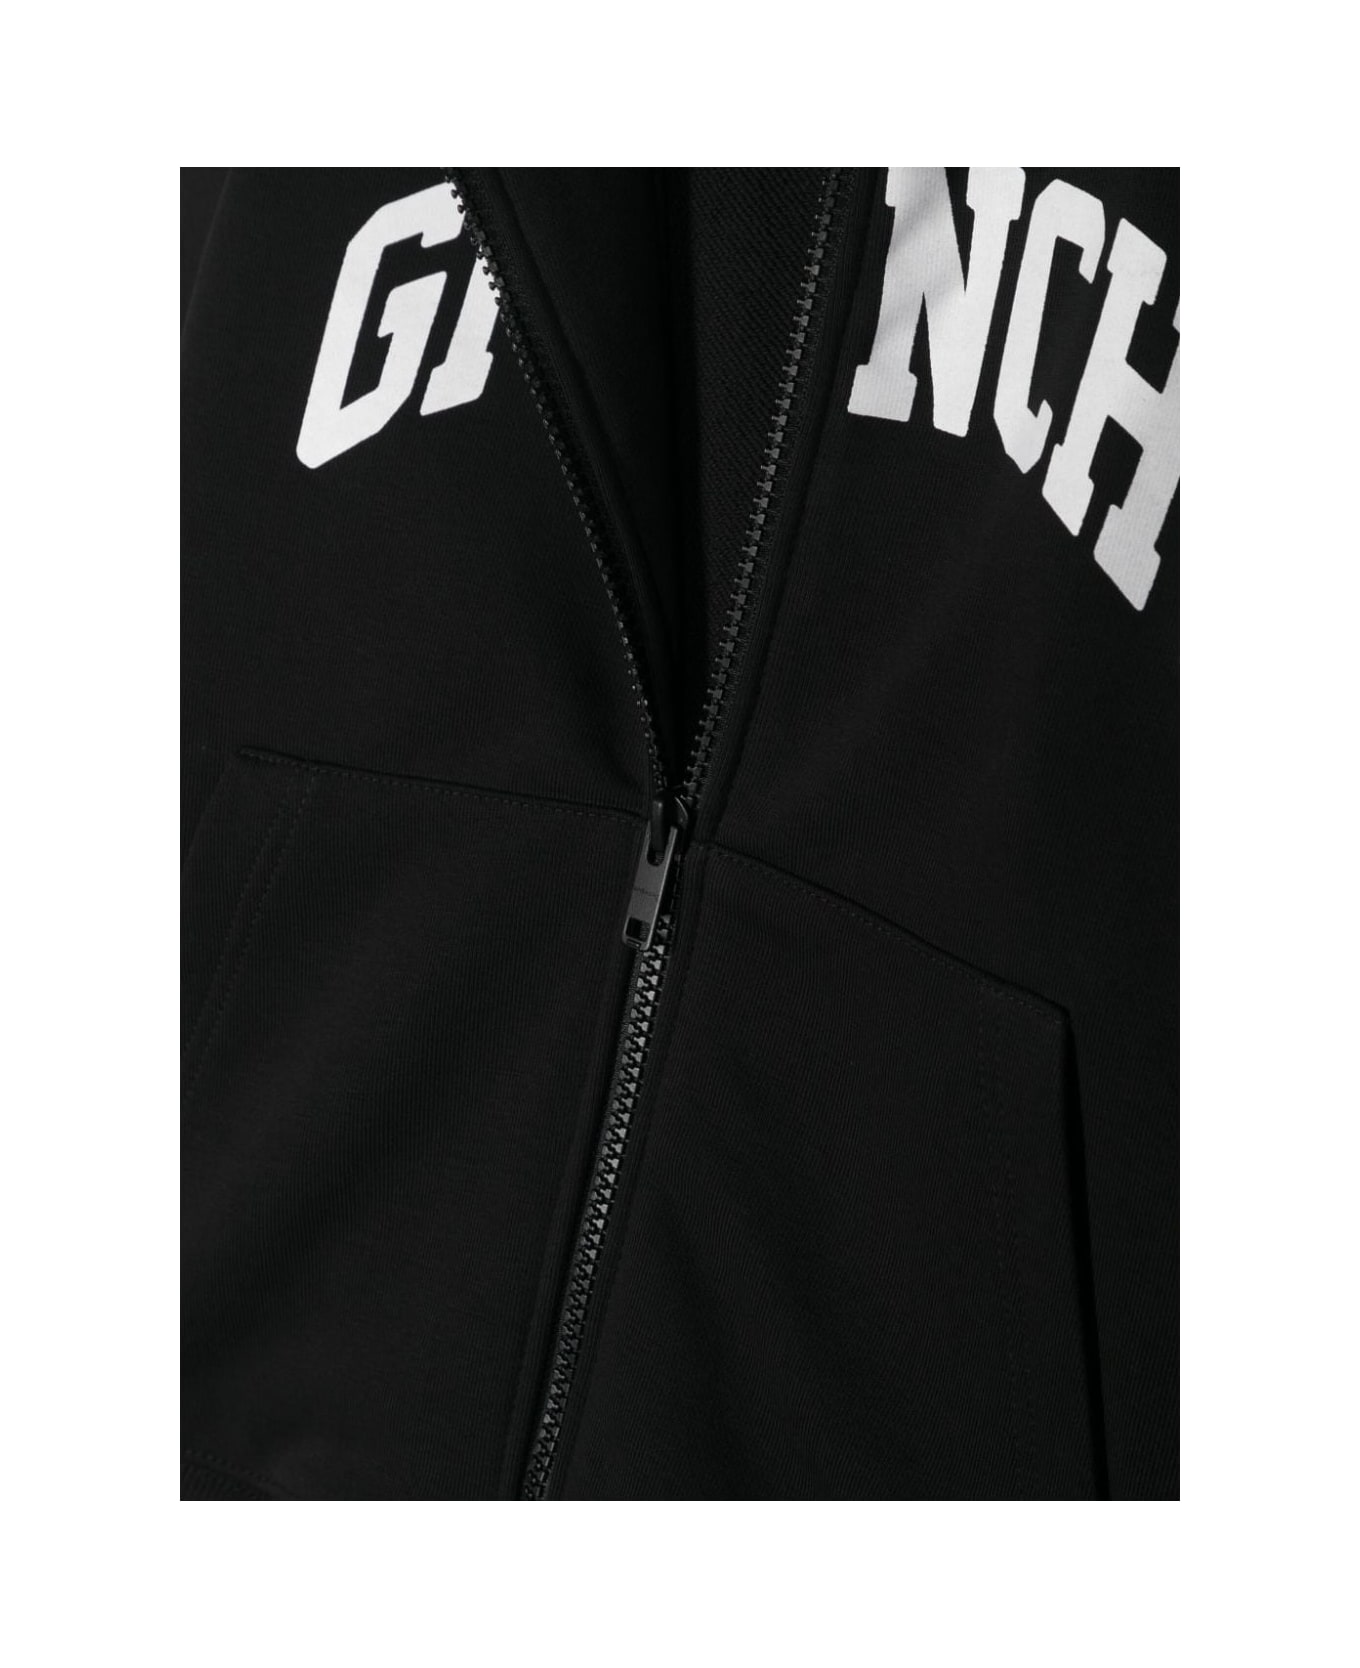 Givenchy Hoodie - Black ニットウェア＆スウェットシャツ